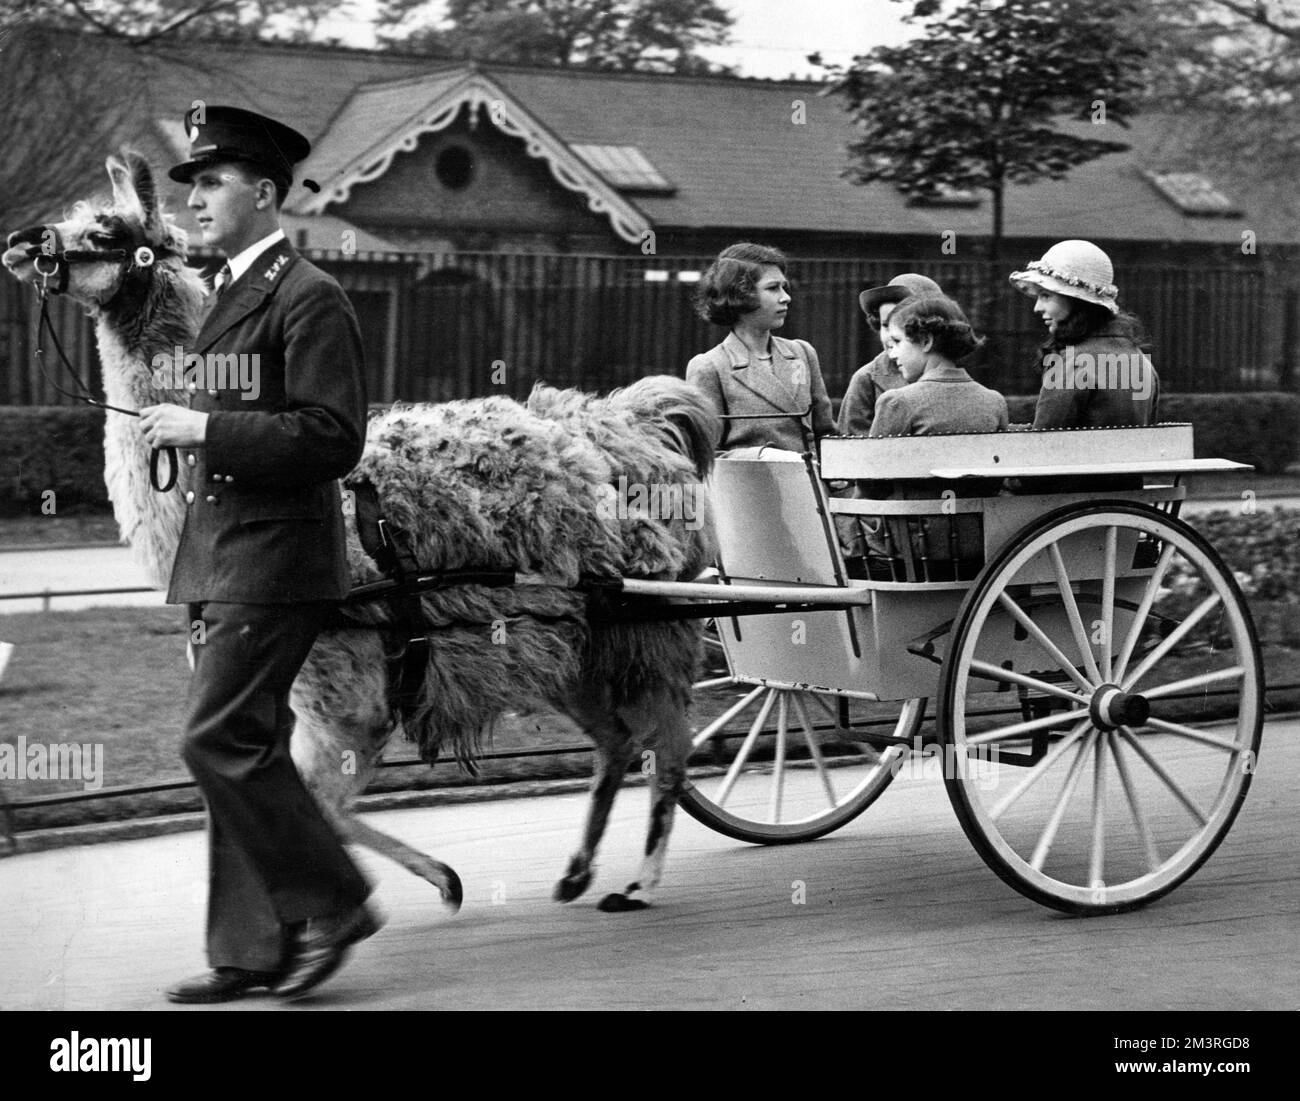 La princesse Elizabeth (reine Elizabeth II), la princesse Margaret avec des amis qui profitent d'une balade en chariot de lama dans un zoo. Date: c.1937 Banque D'Images